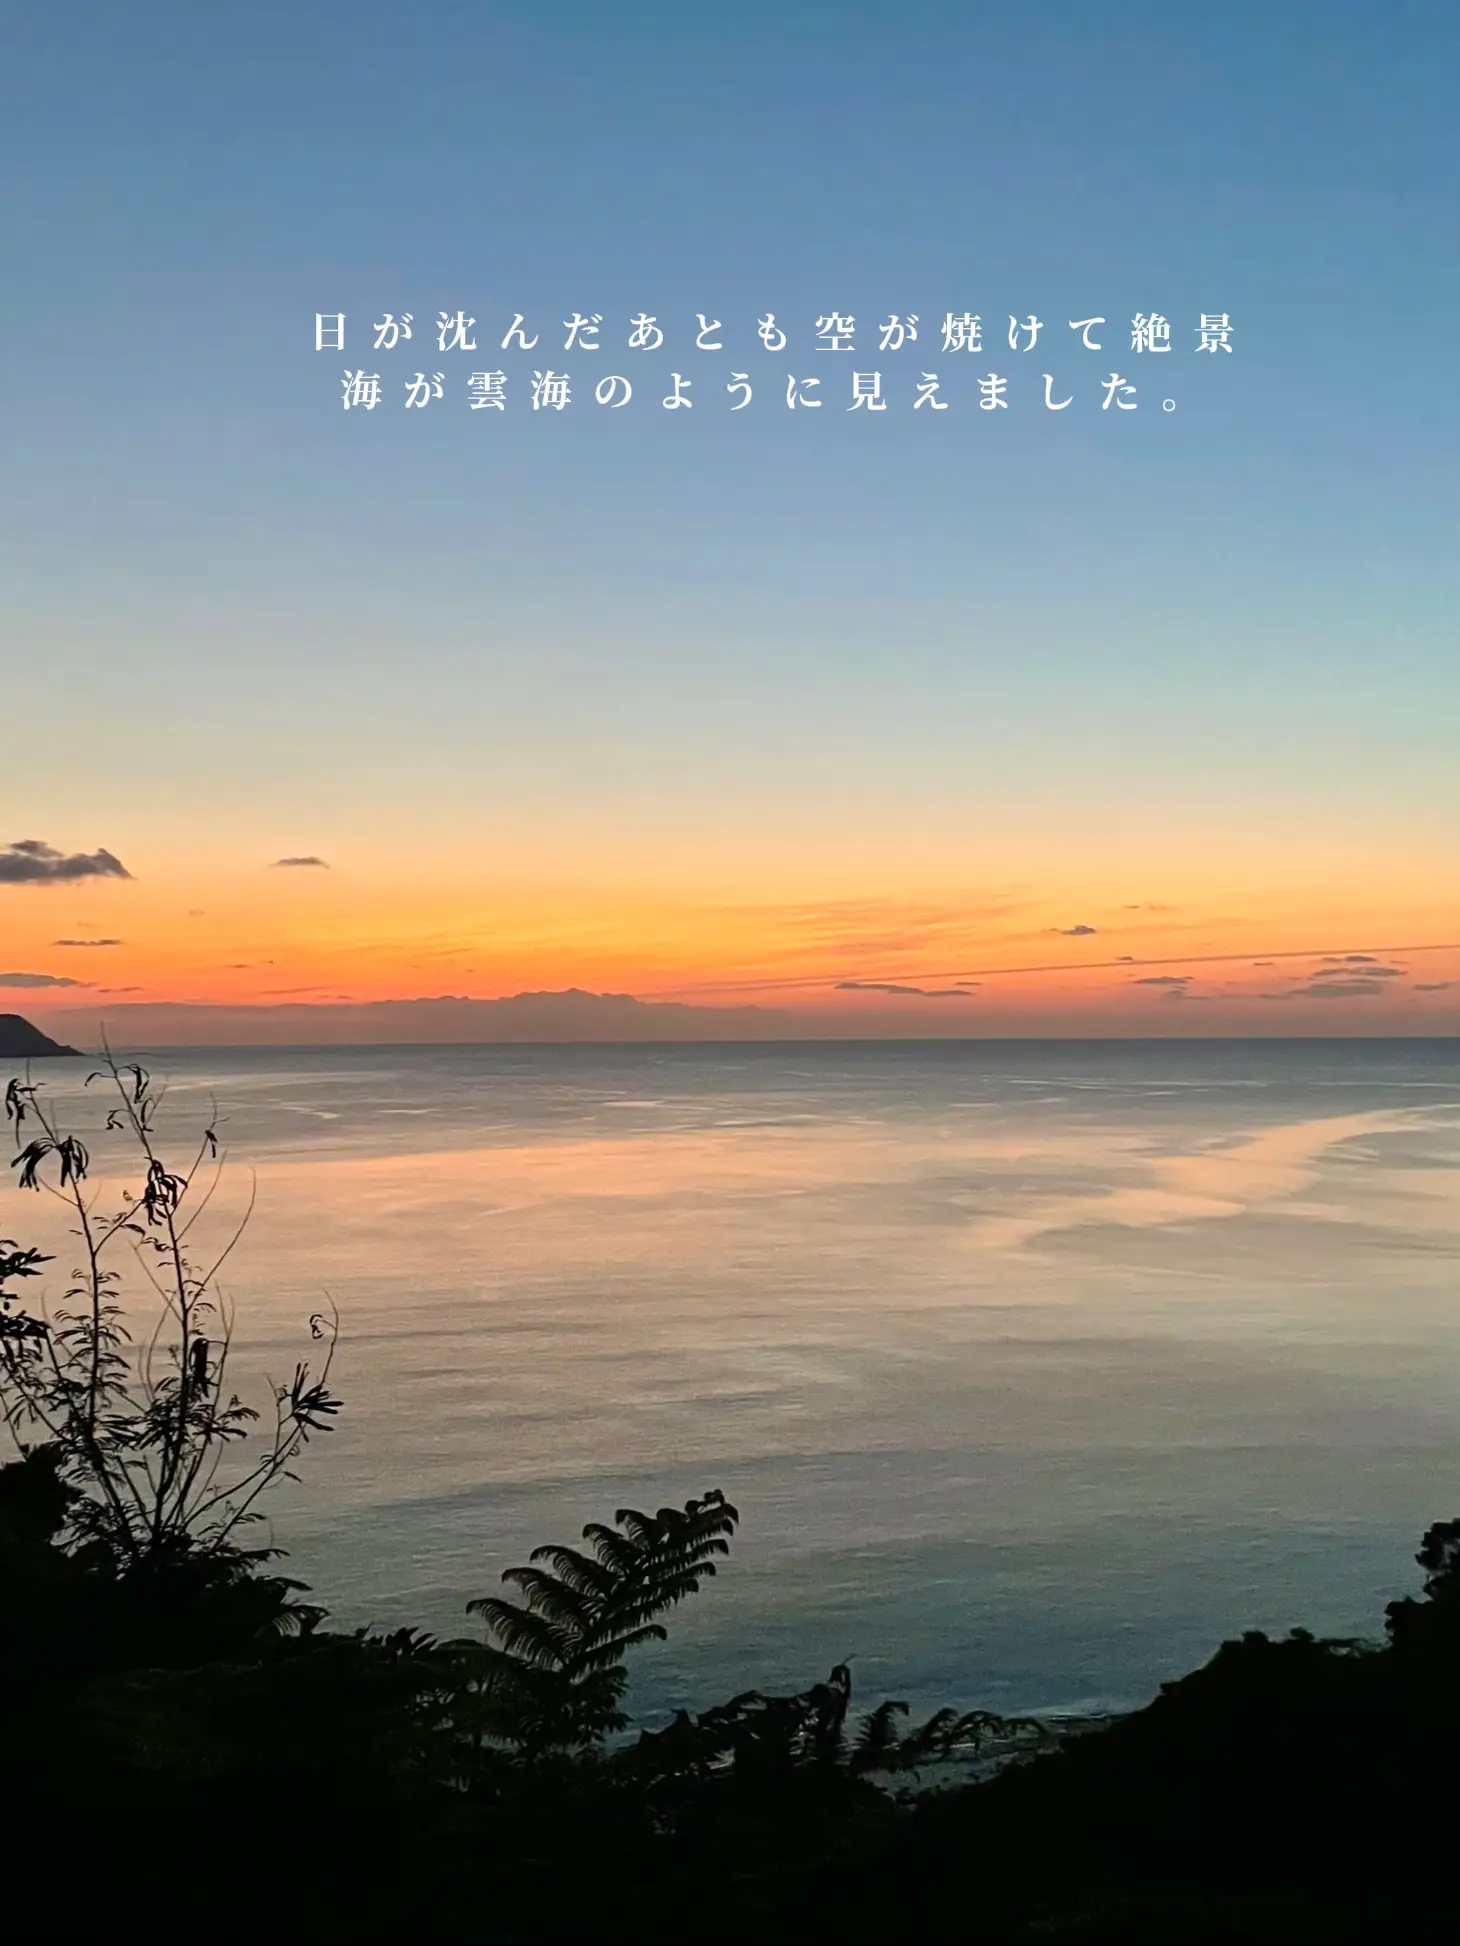 【奄美大島】島の絶景スポットで見るサンセットの画像 (3枚目)